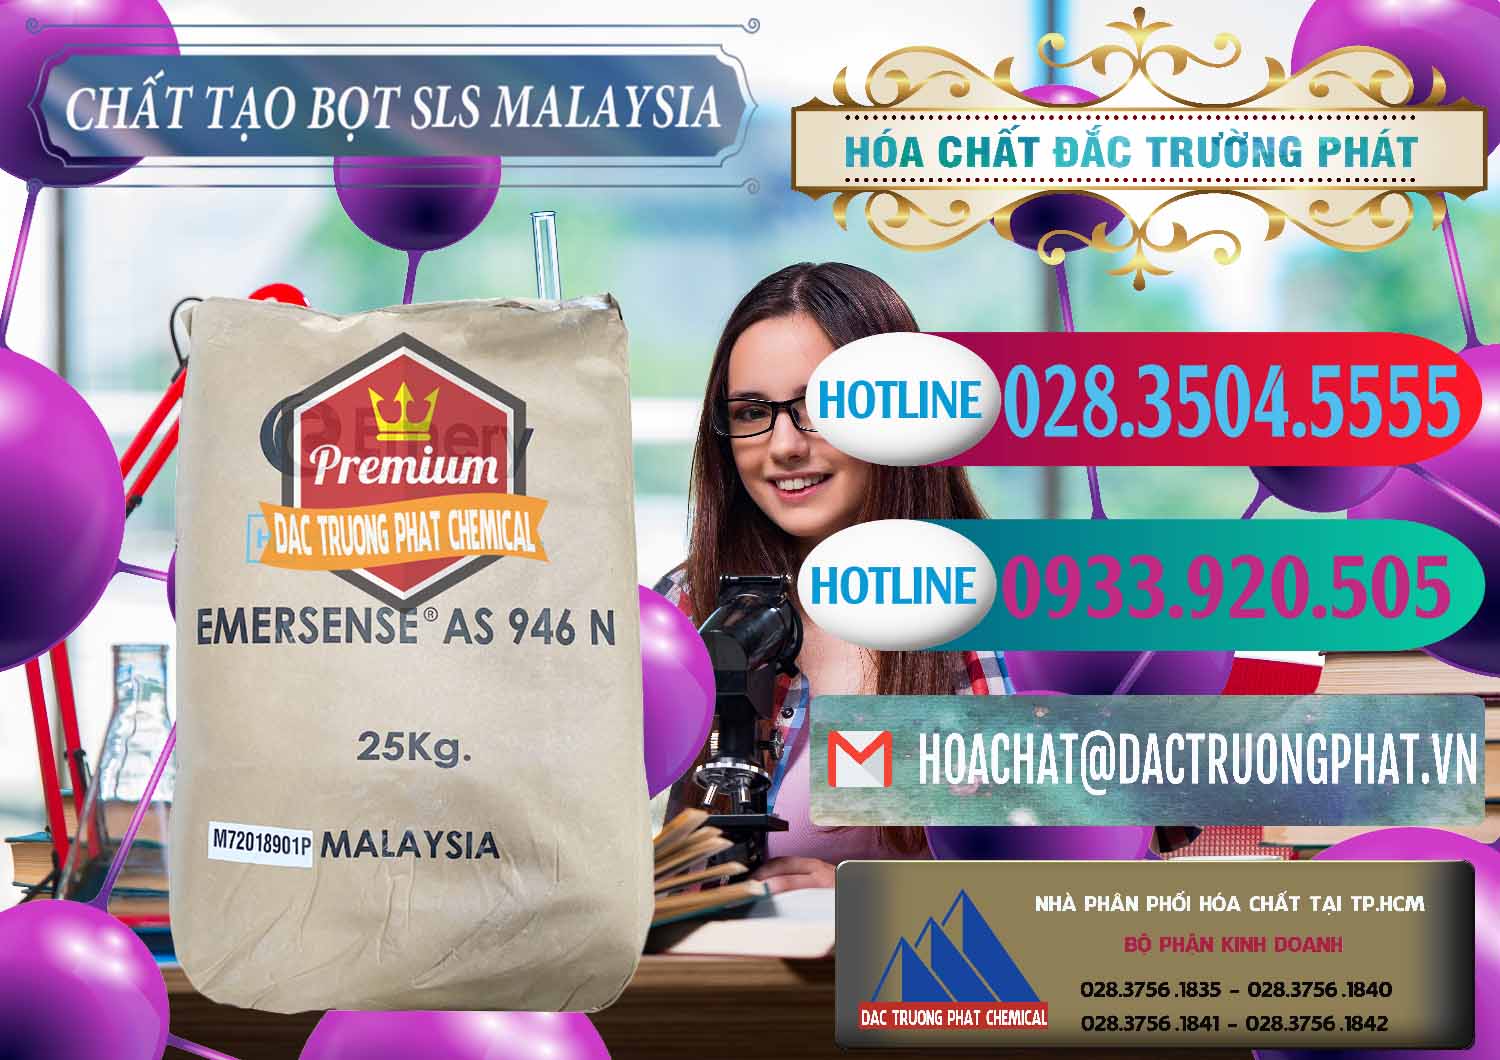 Chuyên bán - cung cấp Chất Tạo Bọt SLS Emery - Emersense AS 946N Mã Lai Malaysia - 0423 - Nơi bán & phân phối hóa chất tại TP.HCM - truongphat.vn